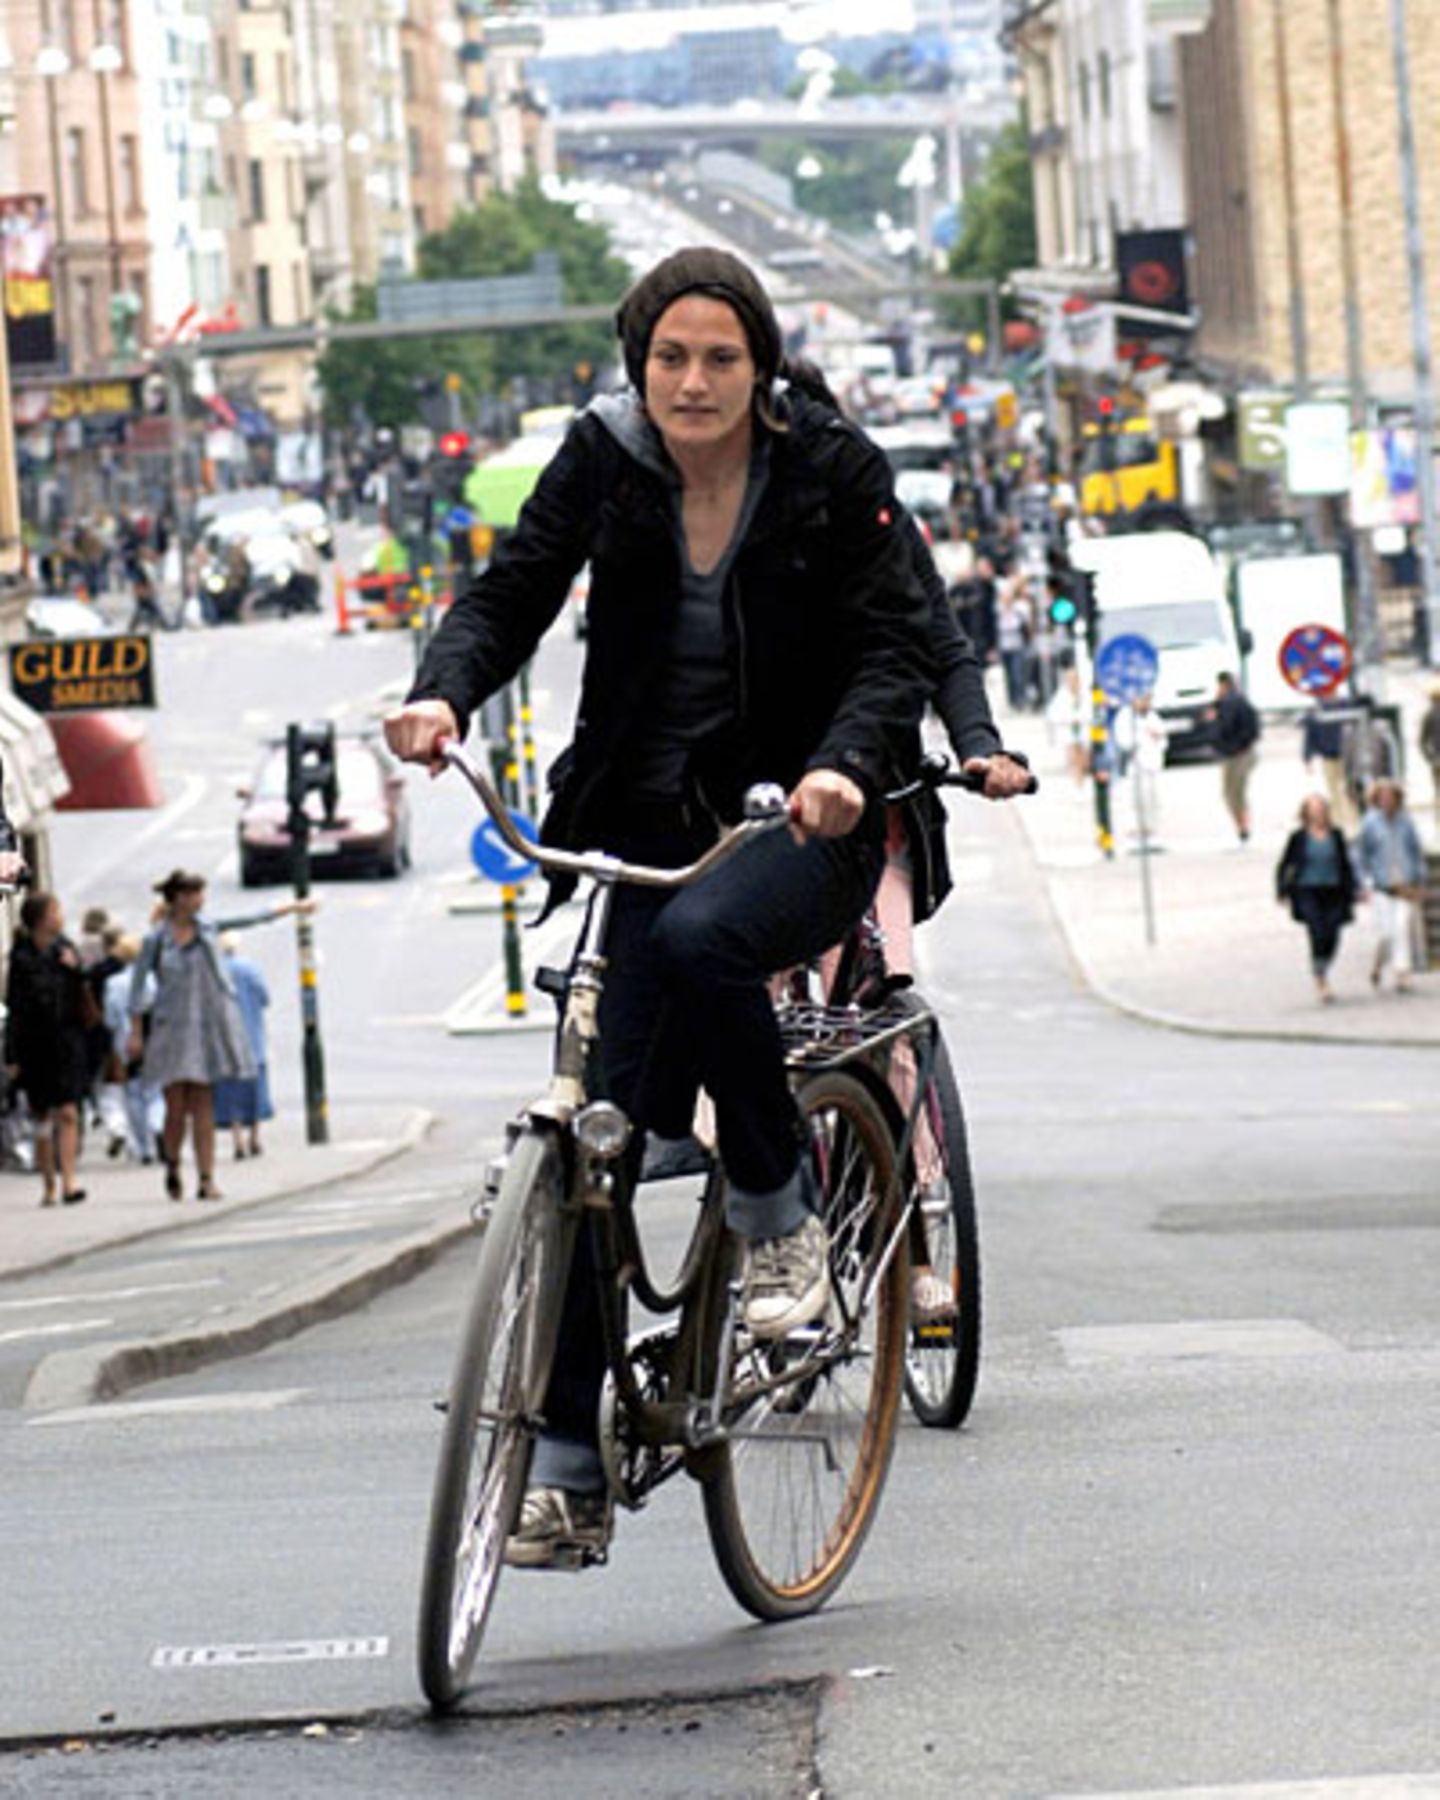 In Stockholm... fuhr sie nicht nur Fahrrad, sie spielte dort auch ein Jahr lang Fußball für den Verein Djurgarden Damfotboll. Ihre Lieblingsstadt aber ist Berlin: "Eine einmalige Stadt in Deutschland, in der ich sechs super Jahre gewohnt habe. Flohmärkte, abgefahrene Kneipen und Leute - alles, was eine Stadt für mich liebenswert macht."